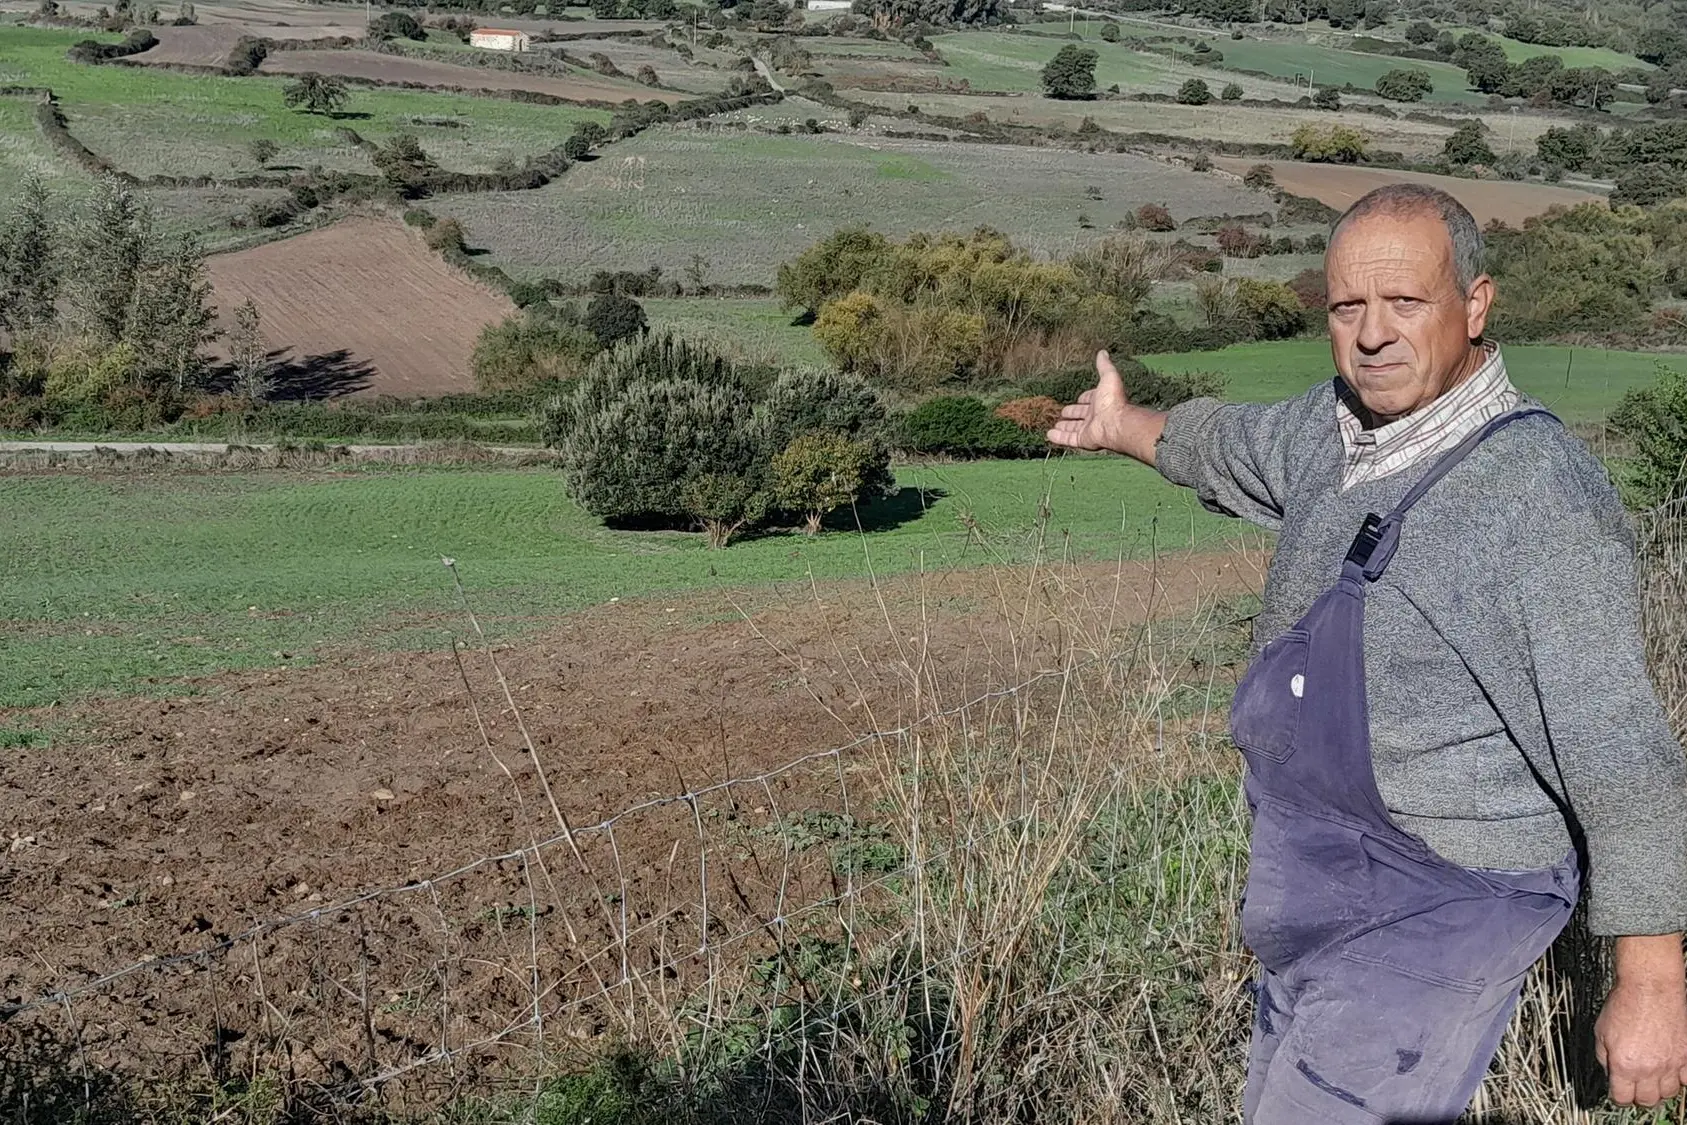 Un allevatore indica le devastazioni dei cinghiali in località Scala Perdosa (L'Unione Sarda - Corrias)